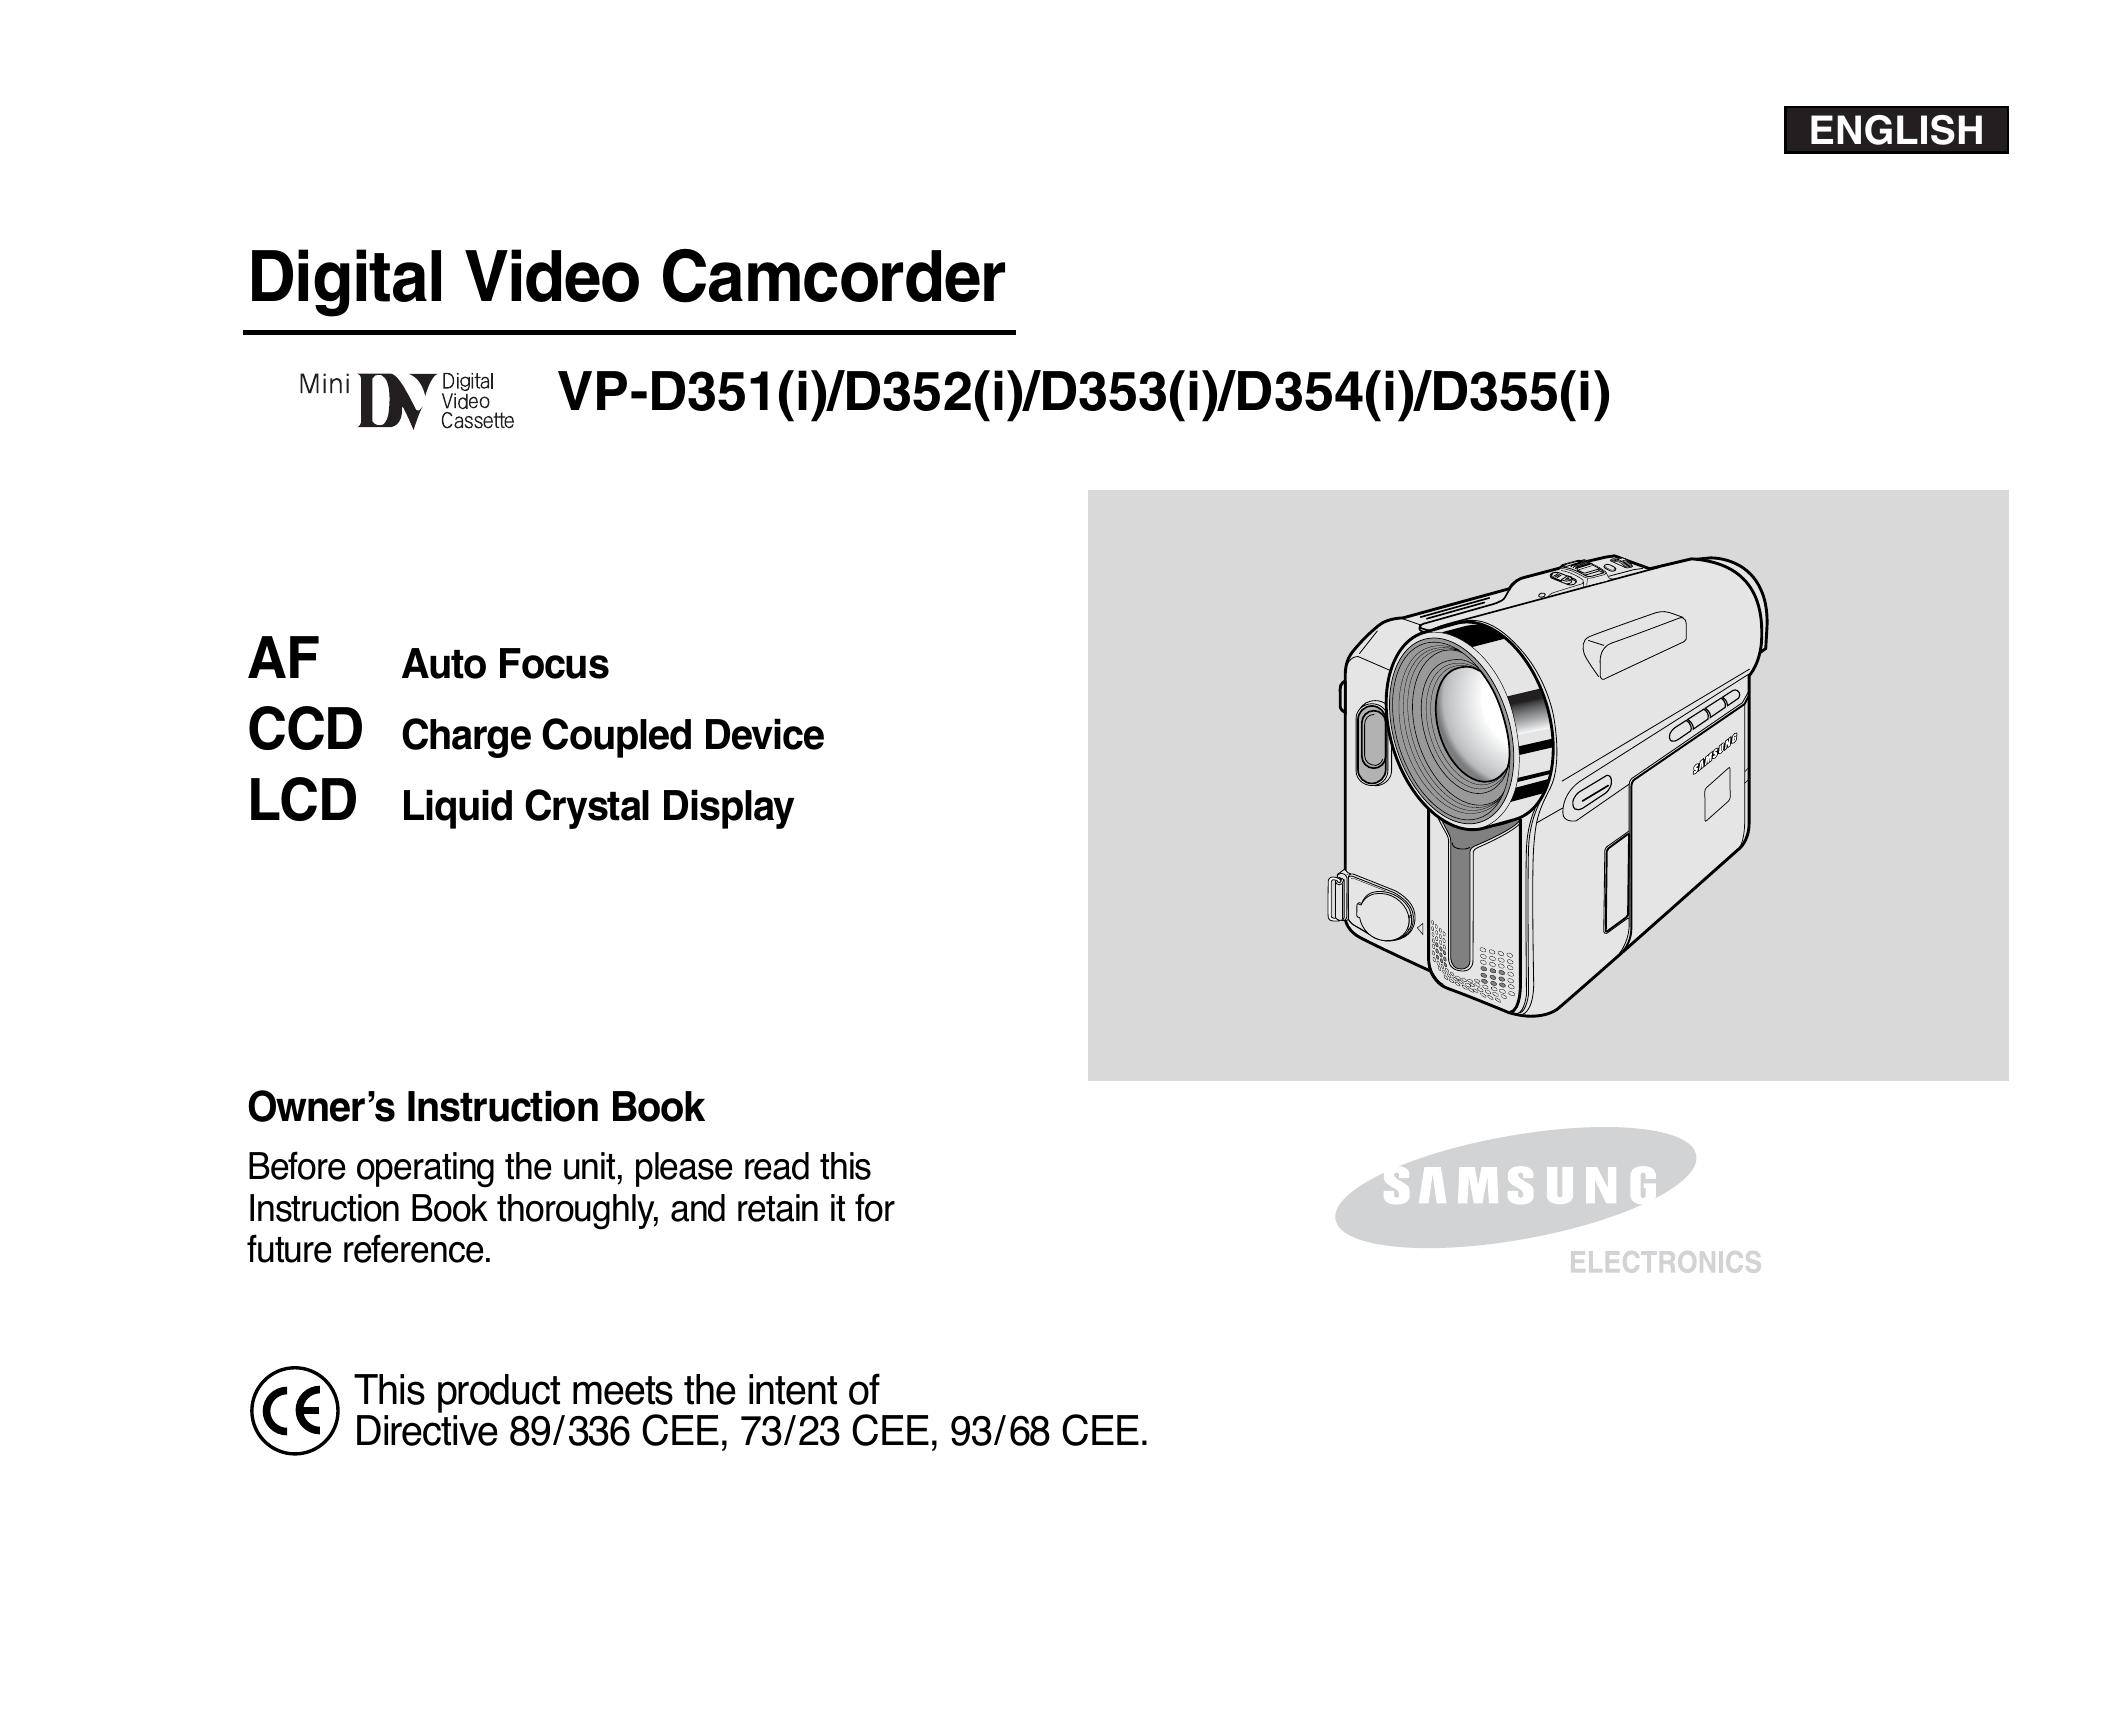 Samsung D355(i) Camcorder User Manual